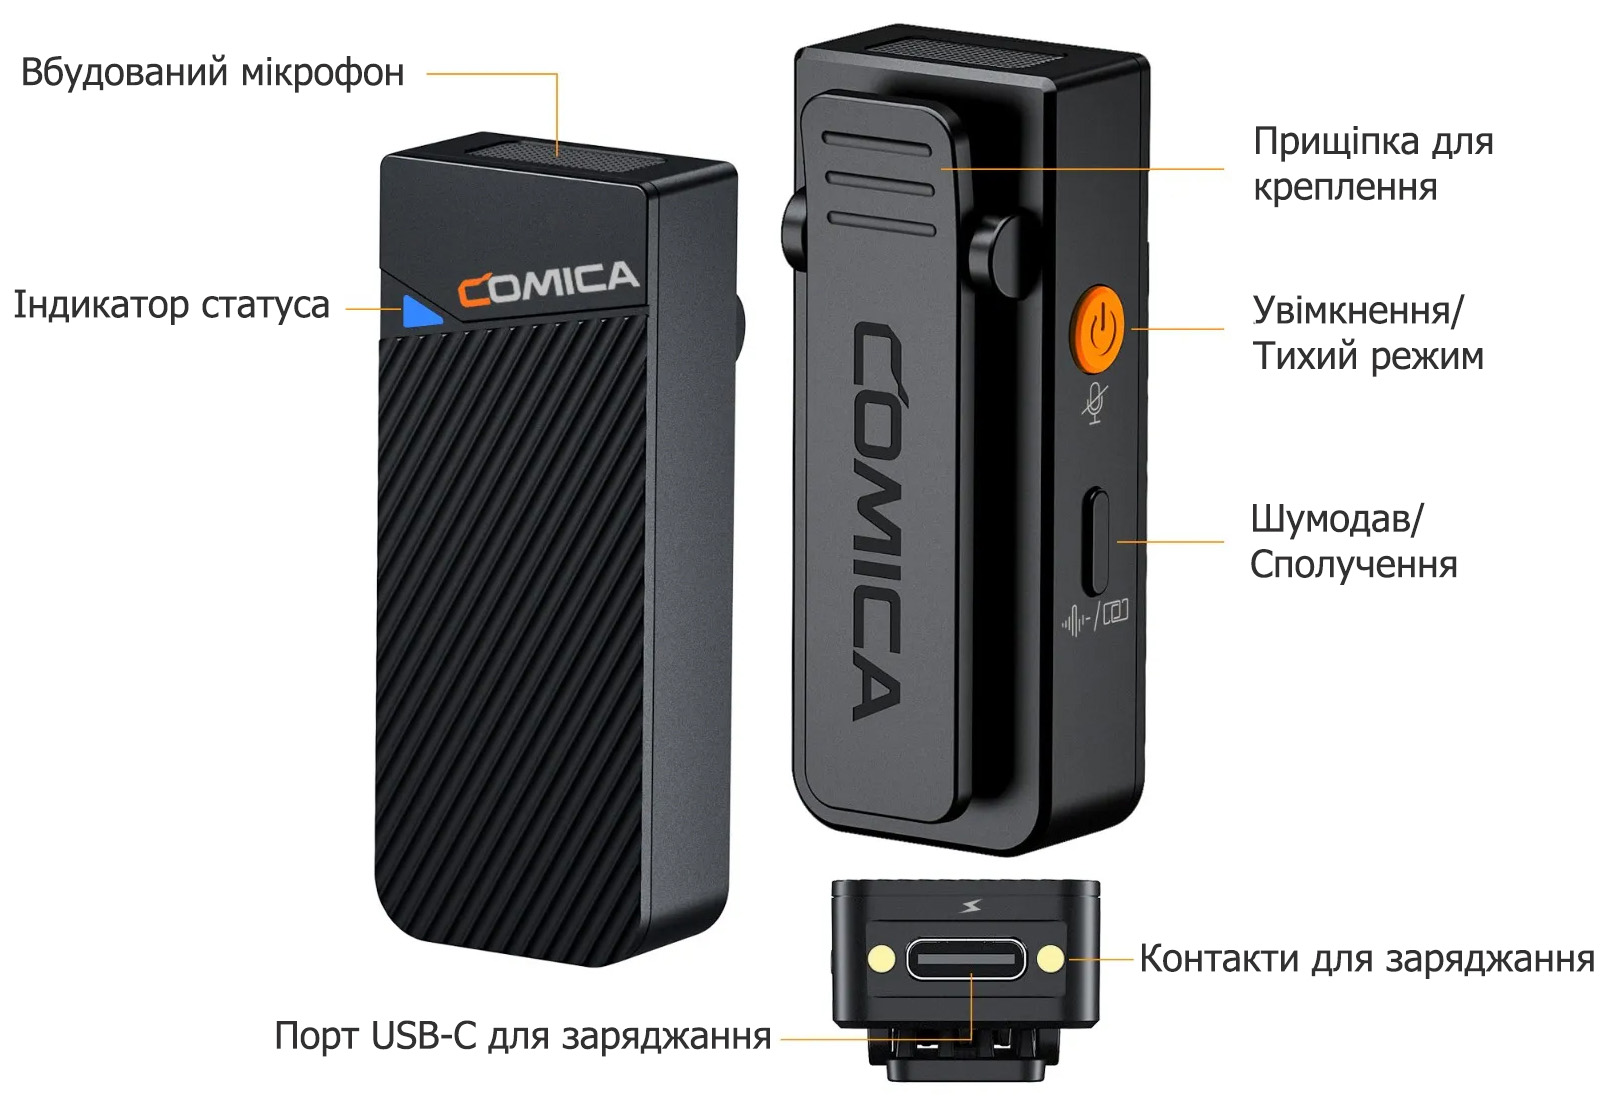 Бездротовий мікрофон Comica Vimo C3 опис елементів передавача